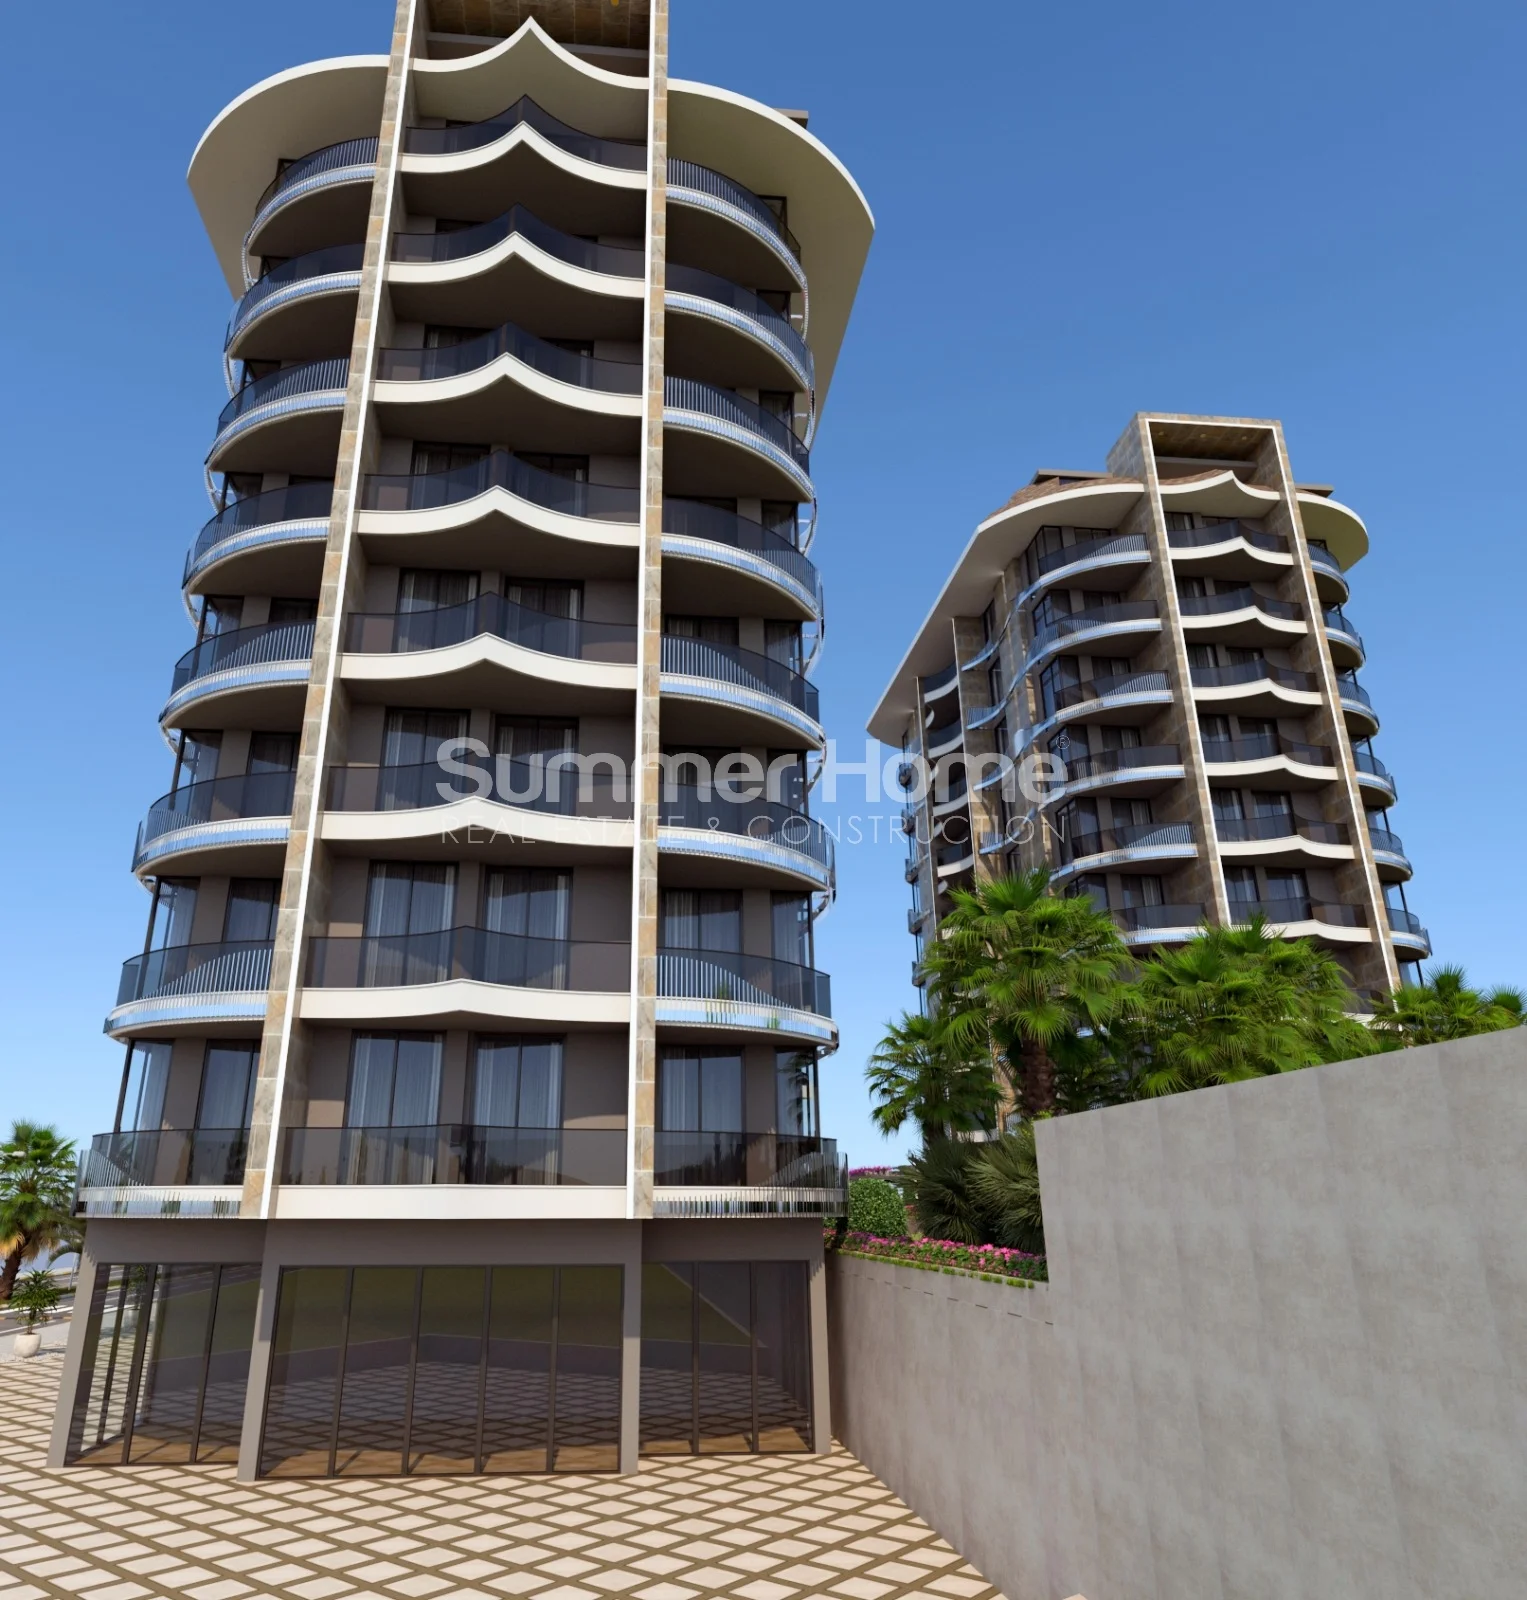 Moderna lägenheter med havsutsikt i vackra Tosmur general - 12